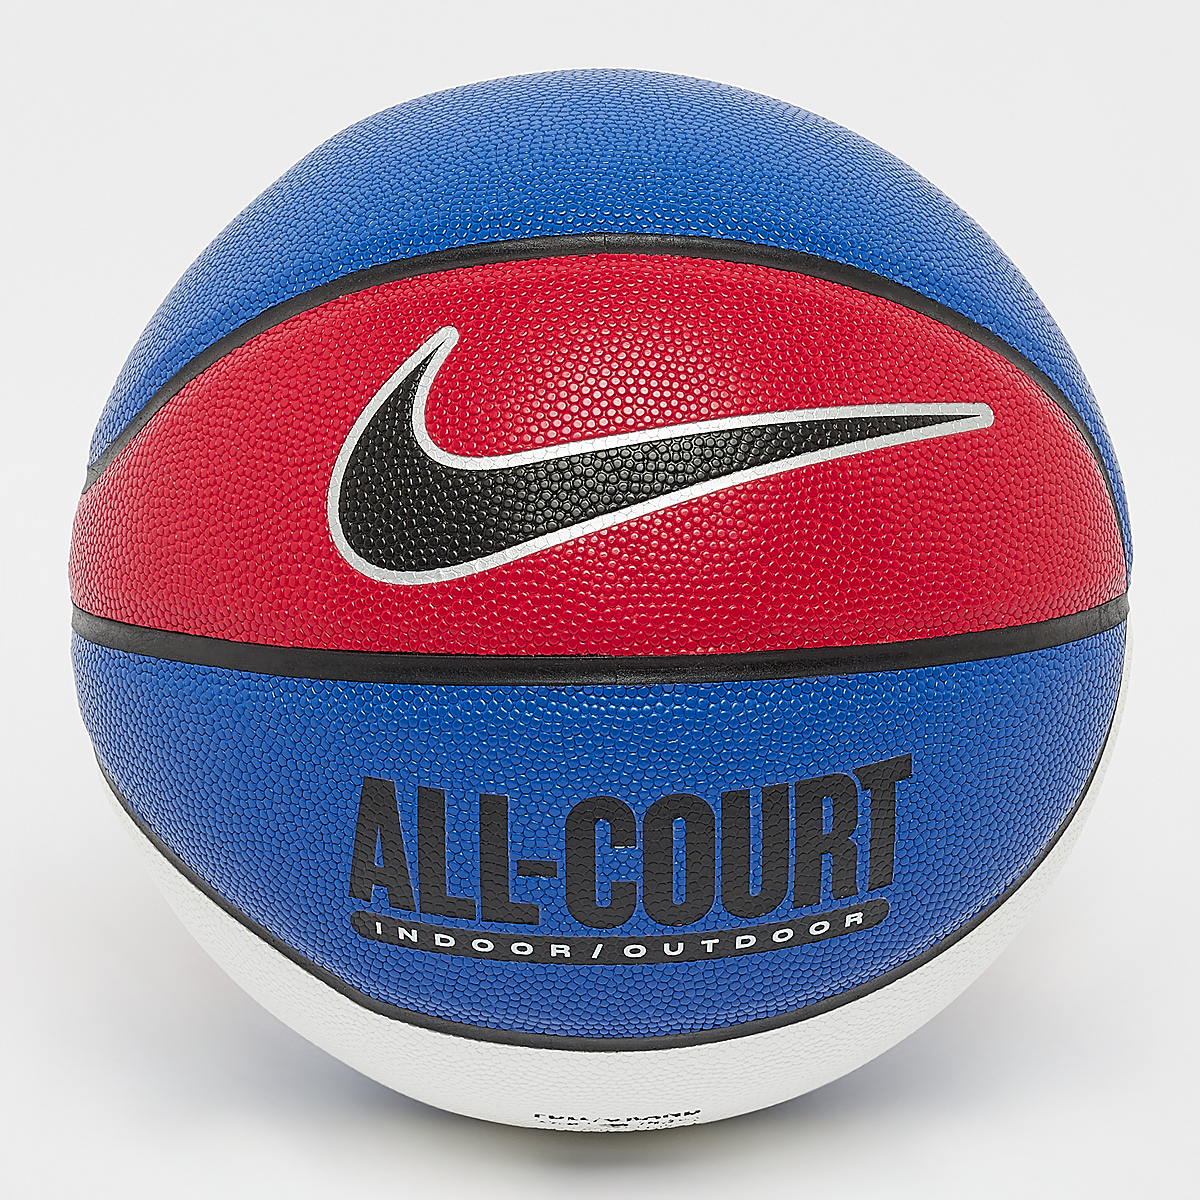 Ballon de basket Nike Everyday All Court Unisexe